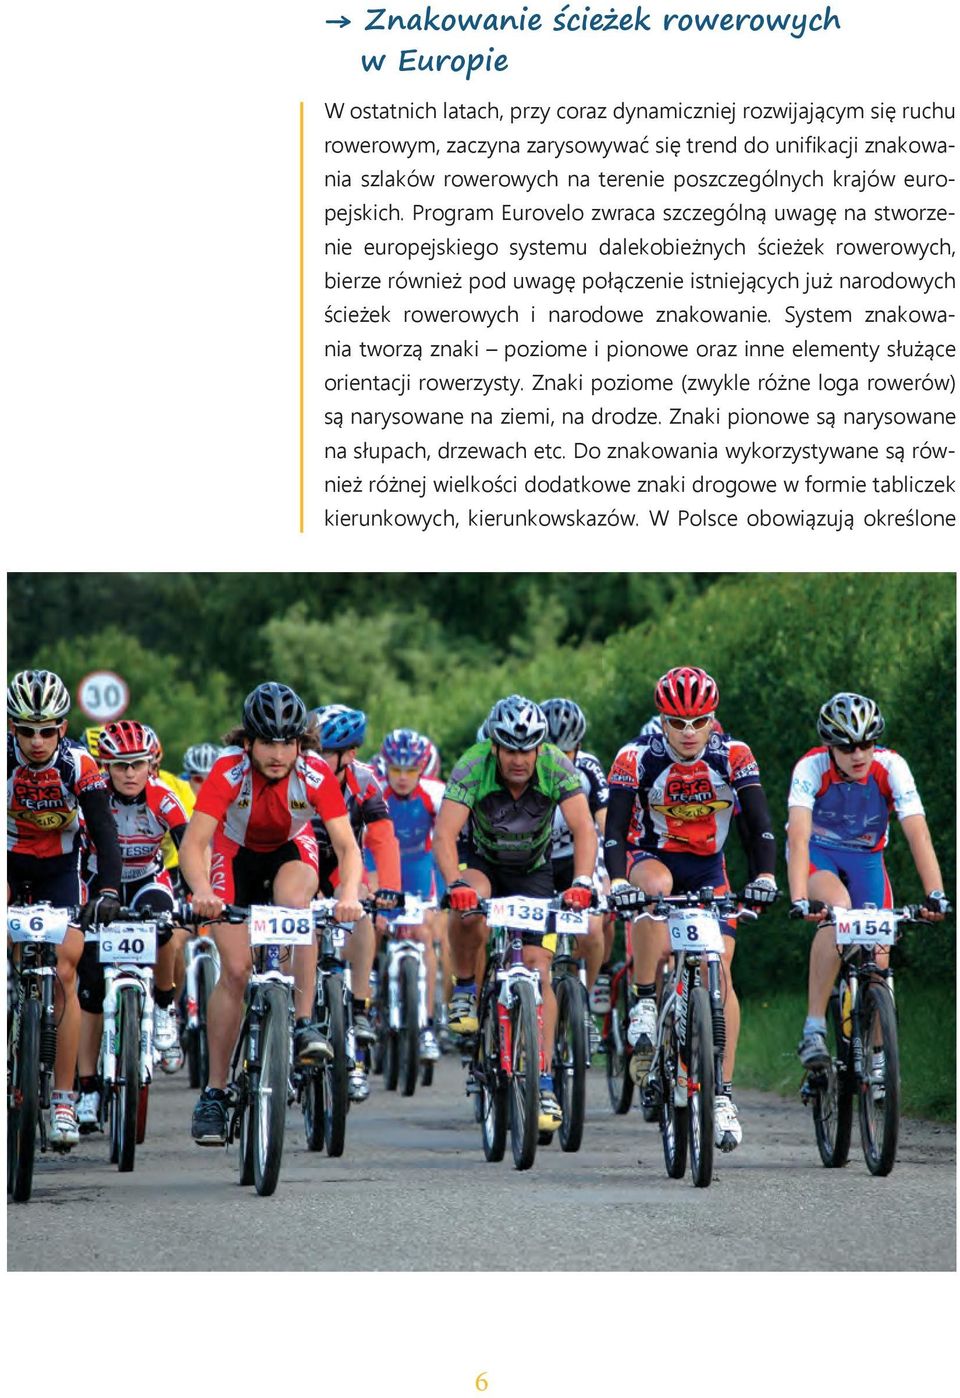 Program Eurovelo zwraca szczególną uwagę na stworzenie europejskiego systemu dalekobieżnych ścieżek rowerowych, bierze również pod uwagę połączenie istniejących już narodowych ścieżek rowerowych i